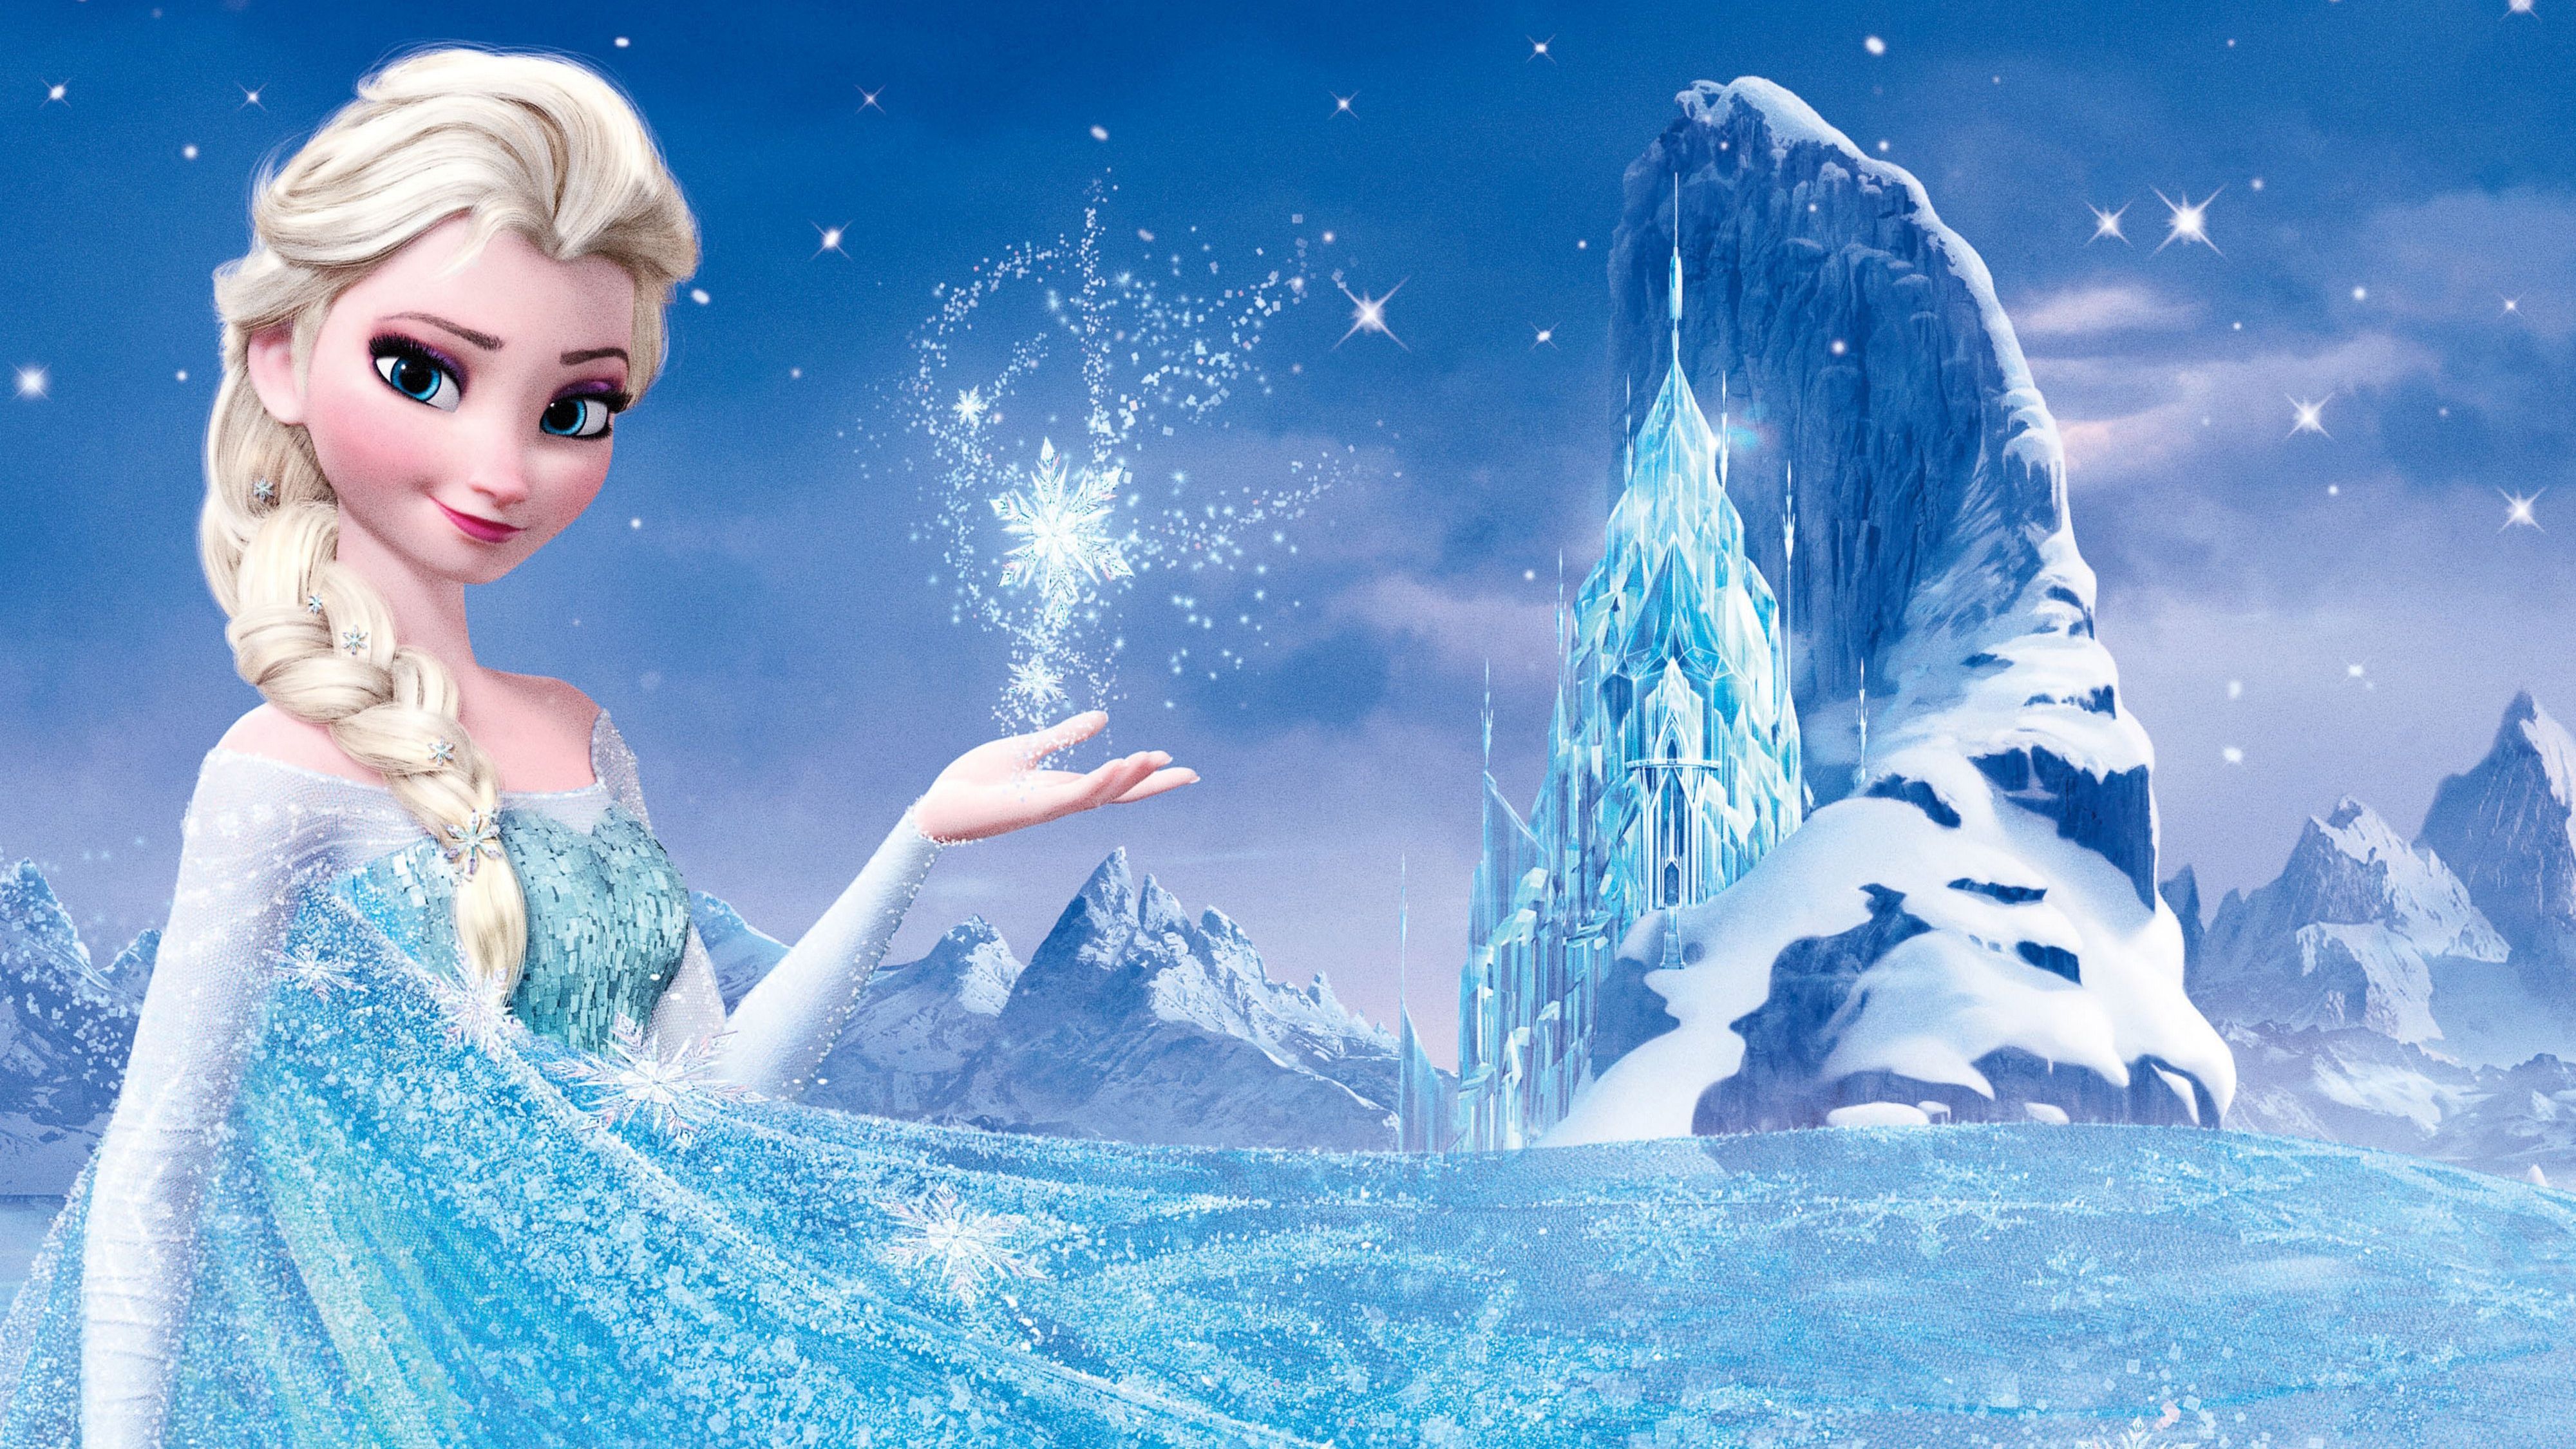 Wallpaper Frozen, Queen Elsa, HD, 4K, Movies